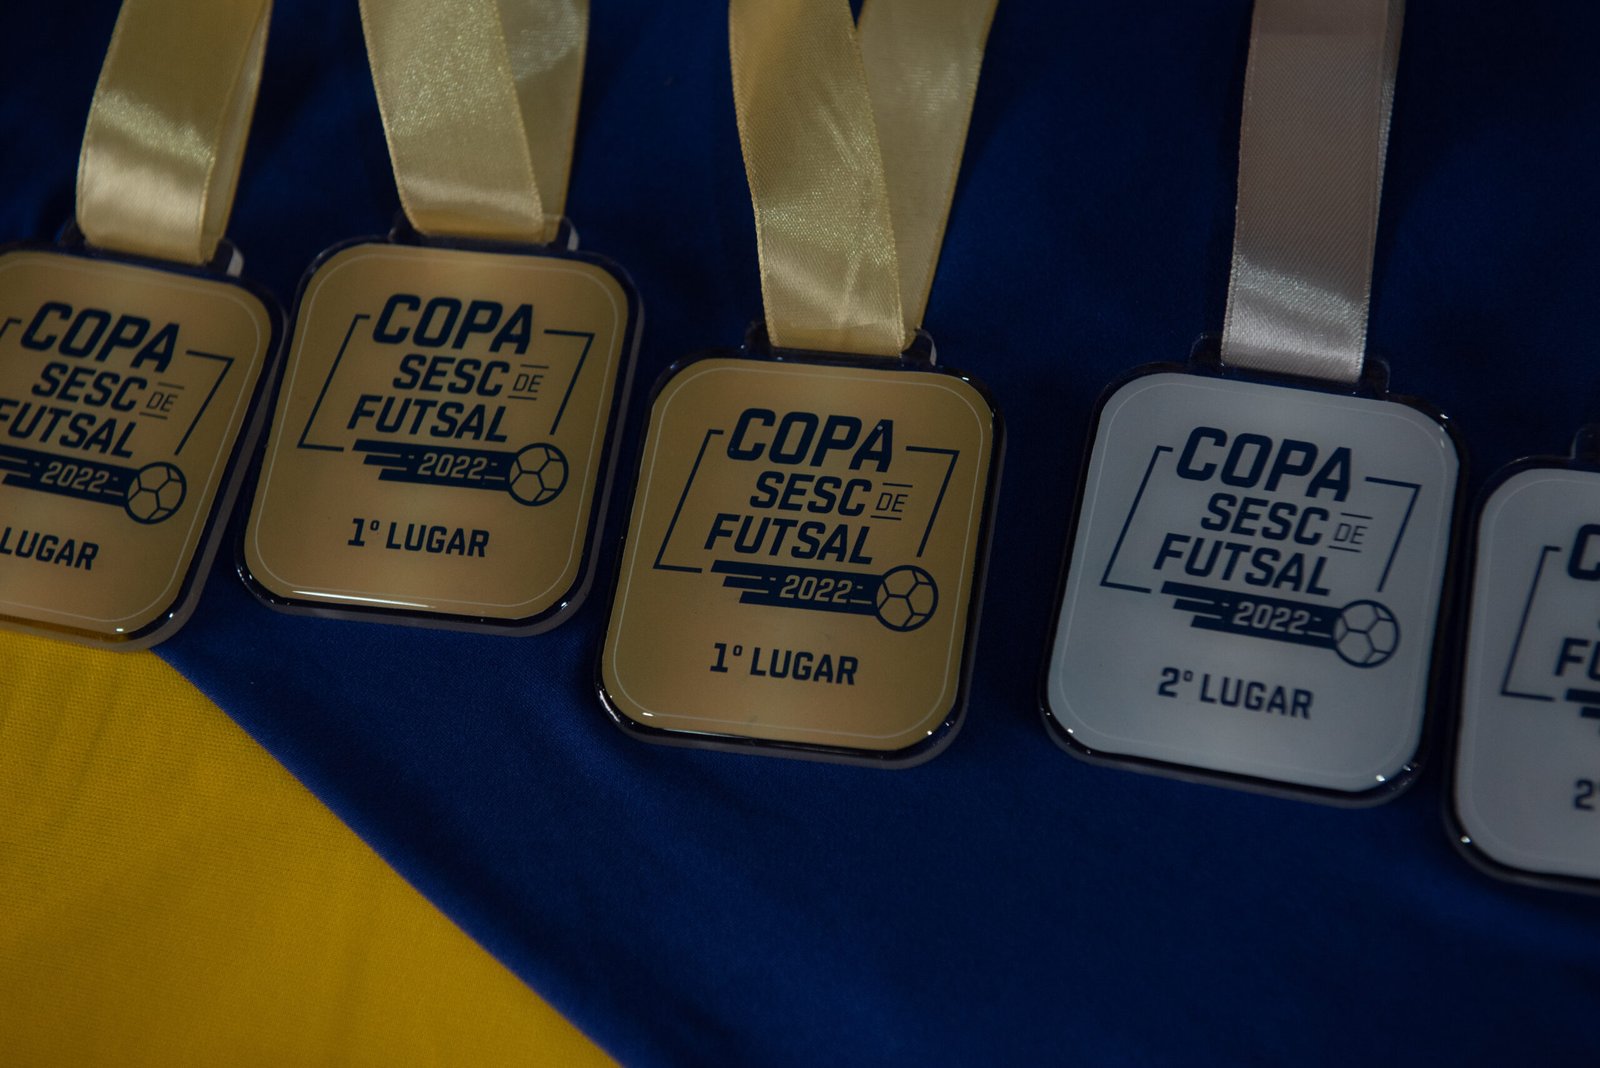 Copas Sesc de Futsal e de Vôlei de Praia recebem inscrições de equipes para as etapas regionais